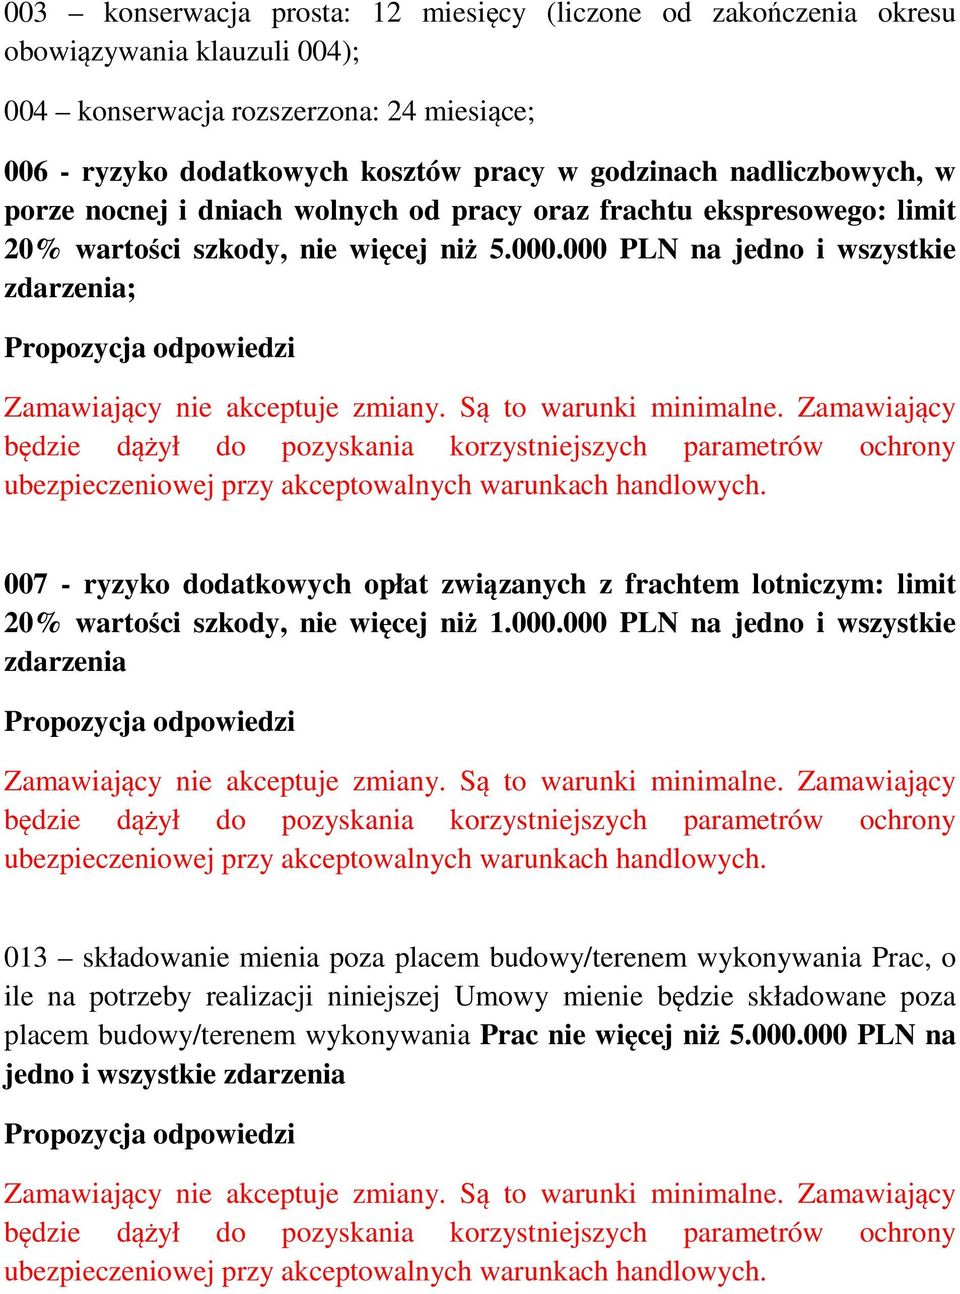 000 PLN na jedno i wszystkie zdarzenia; 007 - ryzyko dodatkowych opłat związanych z frachtem lotniczym: limit 20% wartości szkody, nie więcej niż 1.000.000 PLN na jedno i wszystkie